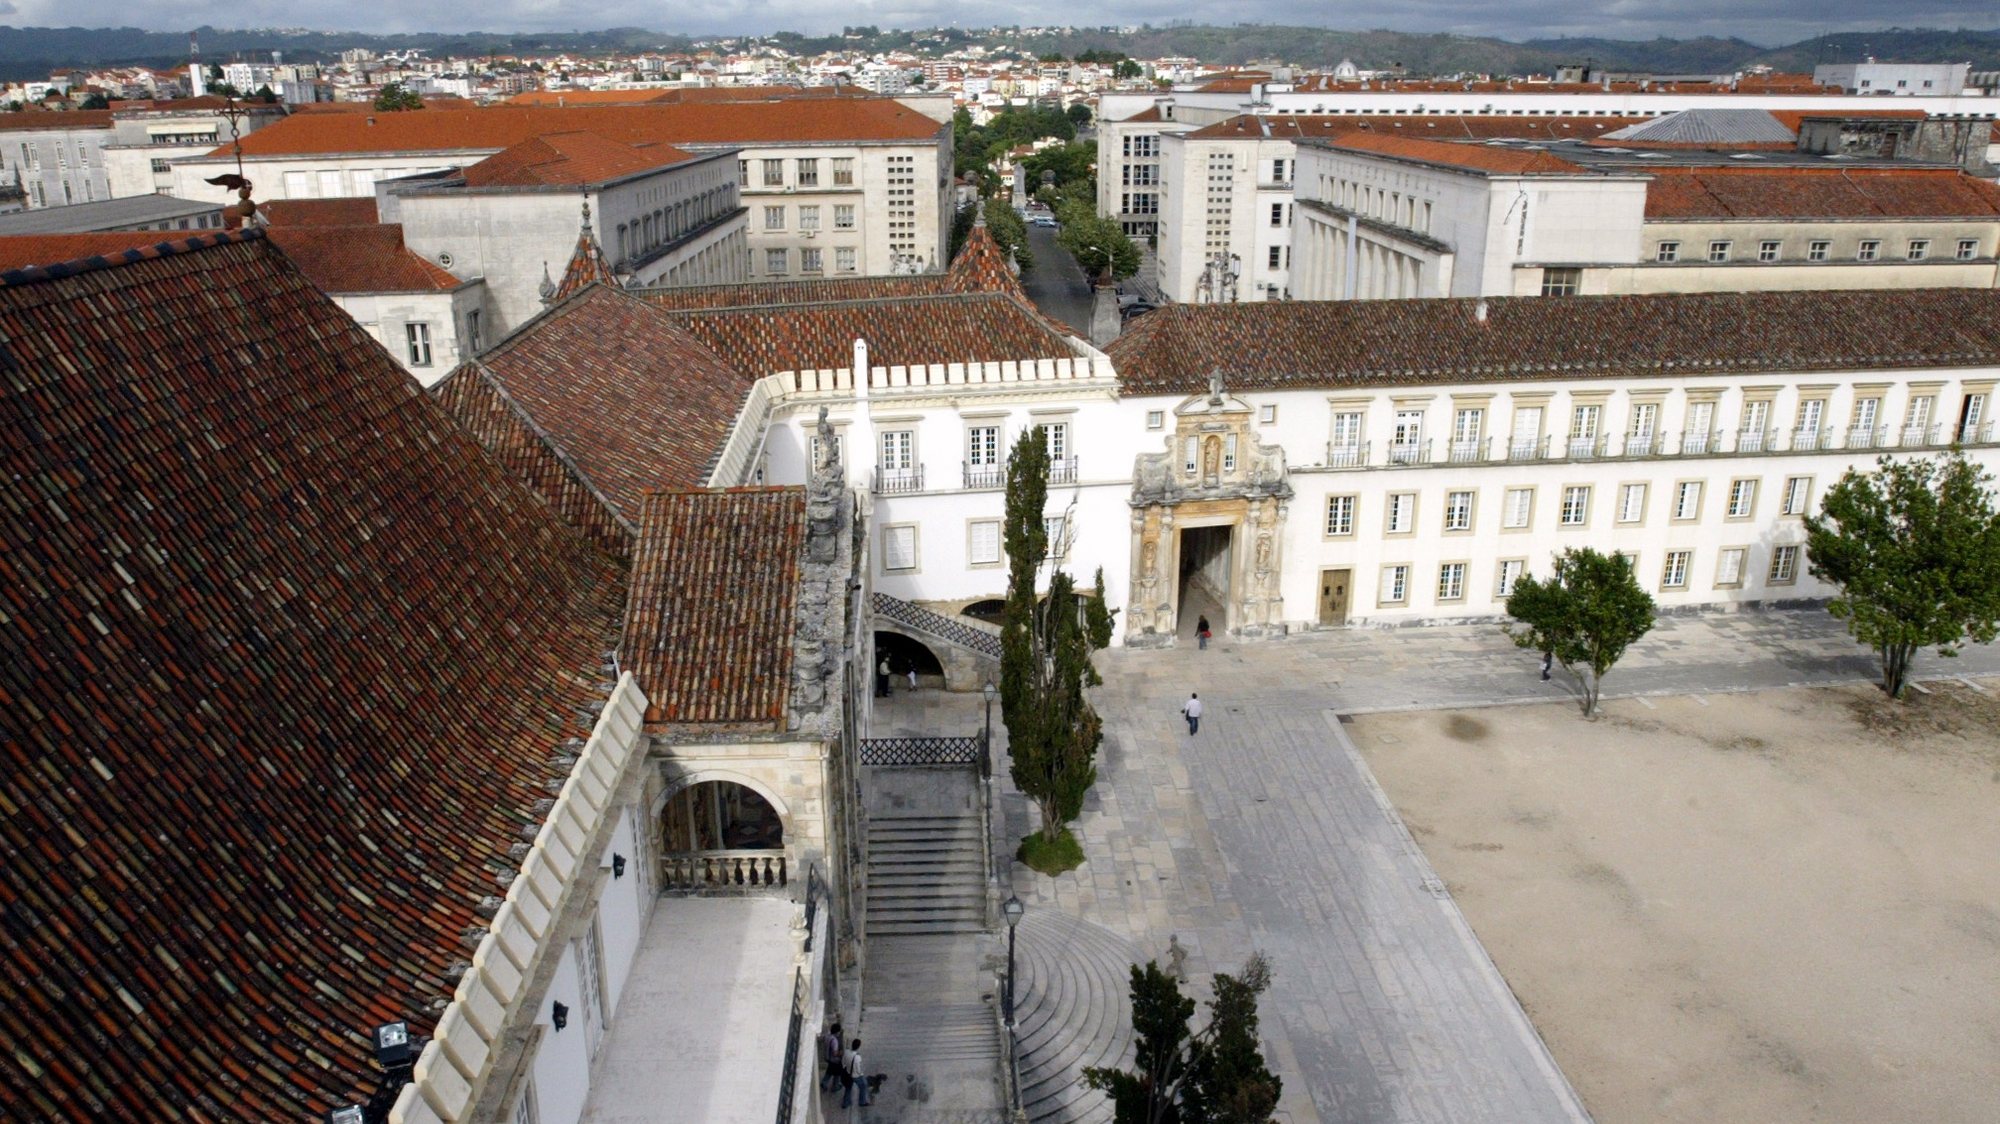 Vista geral da reitoria da Universidade de Coimbra, a 19 de Abril de 2007.
PAULO NOVAIS / LUSA